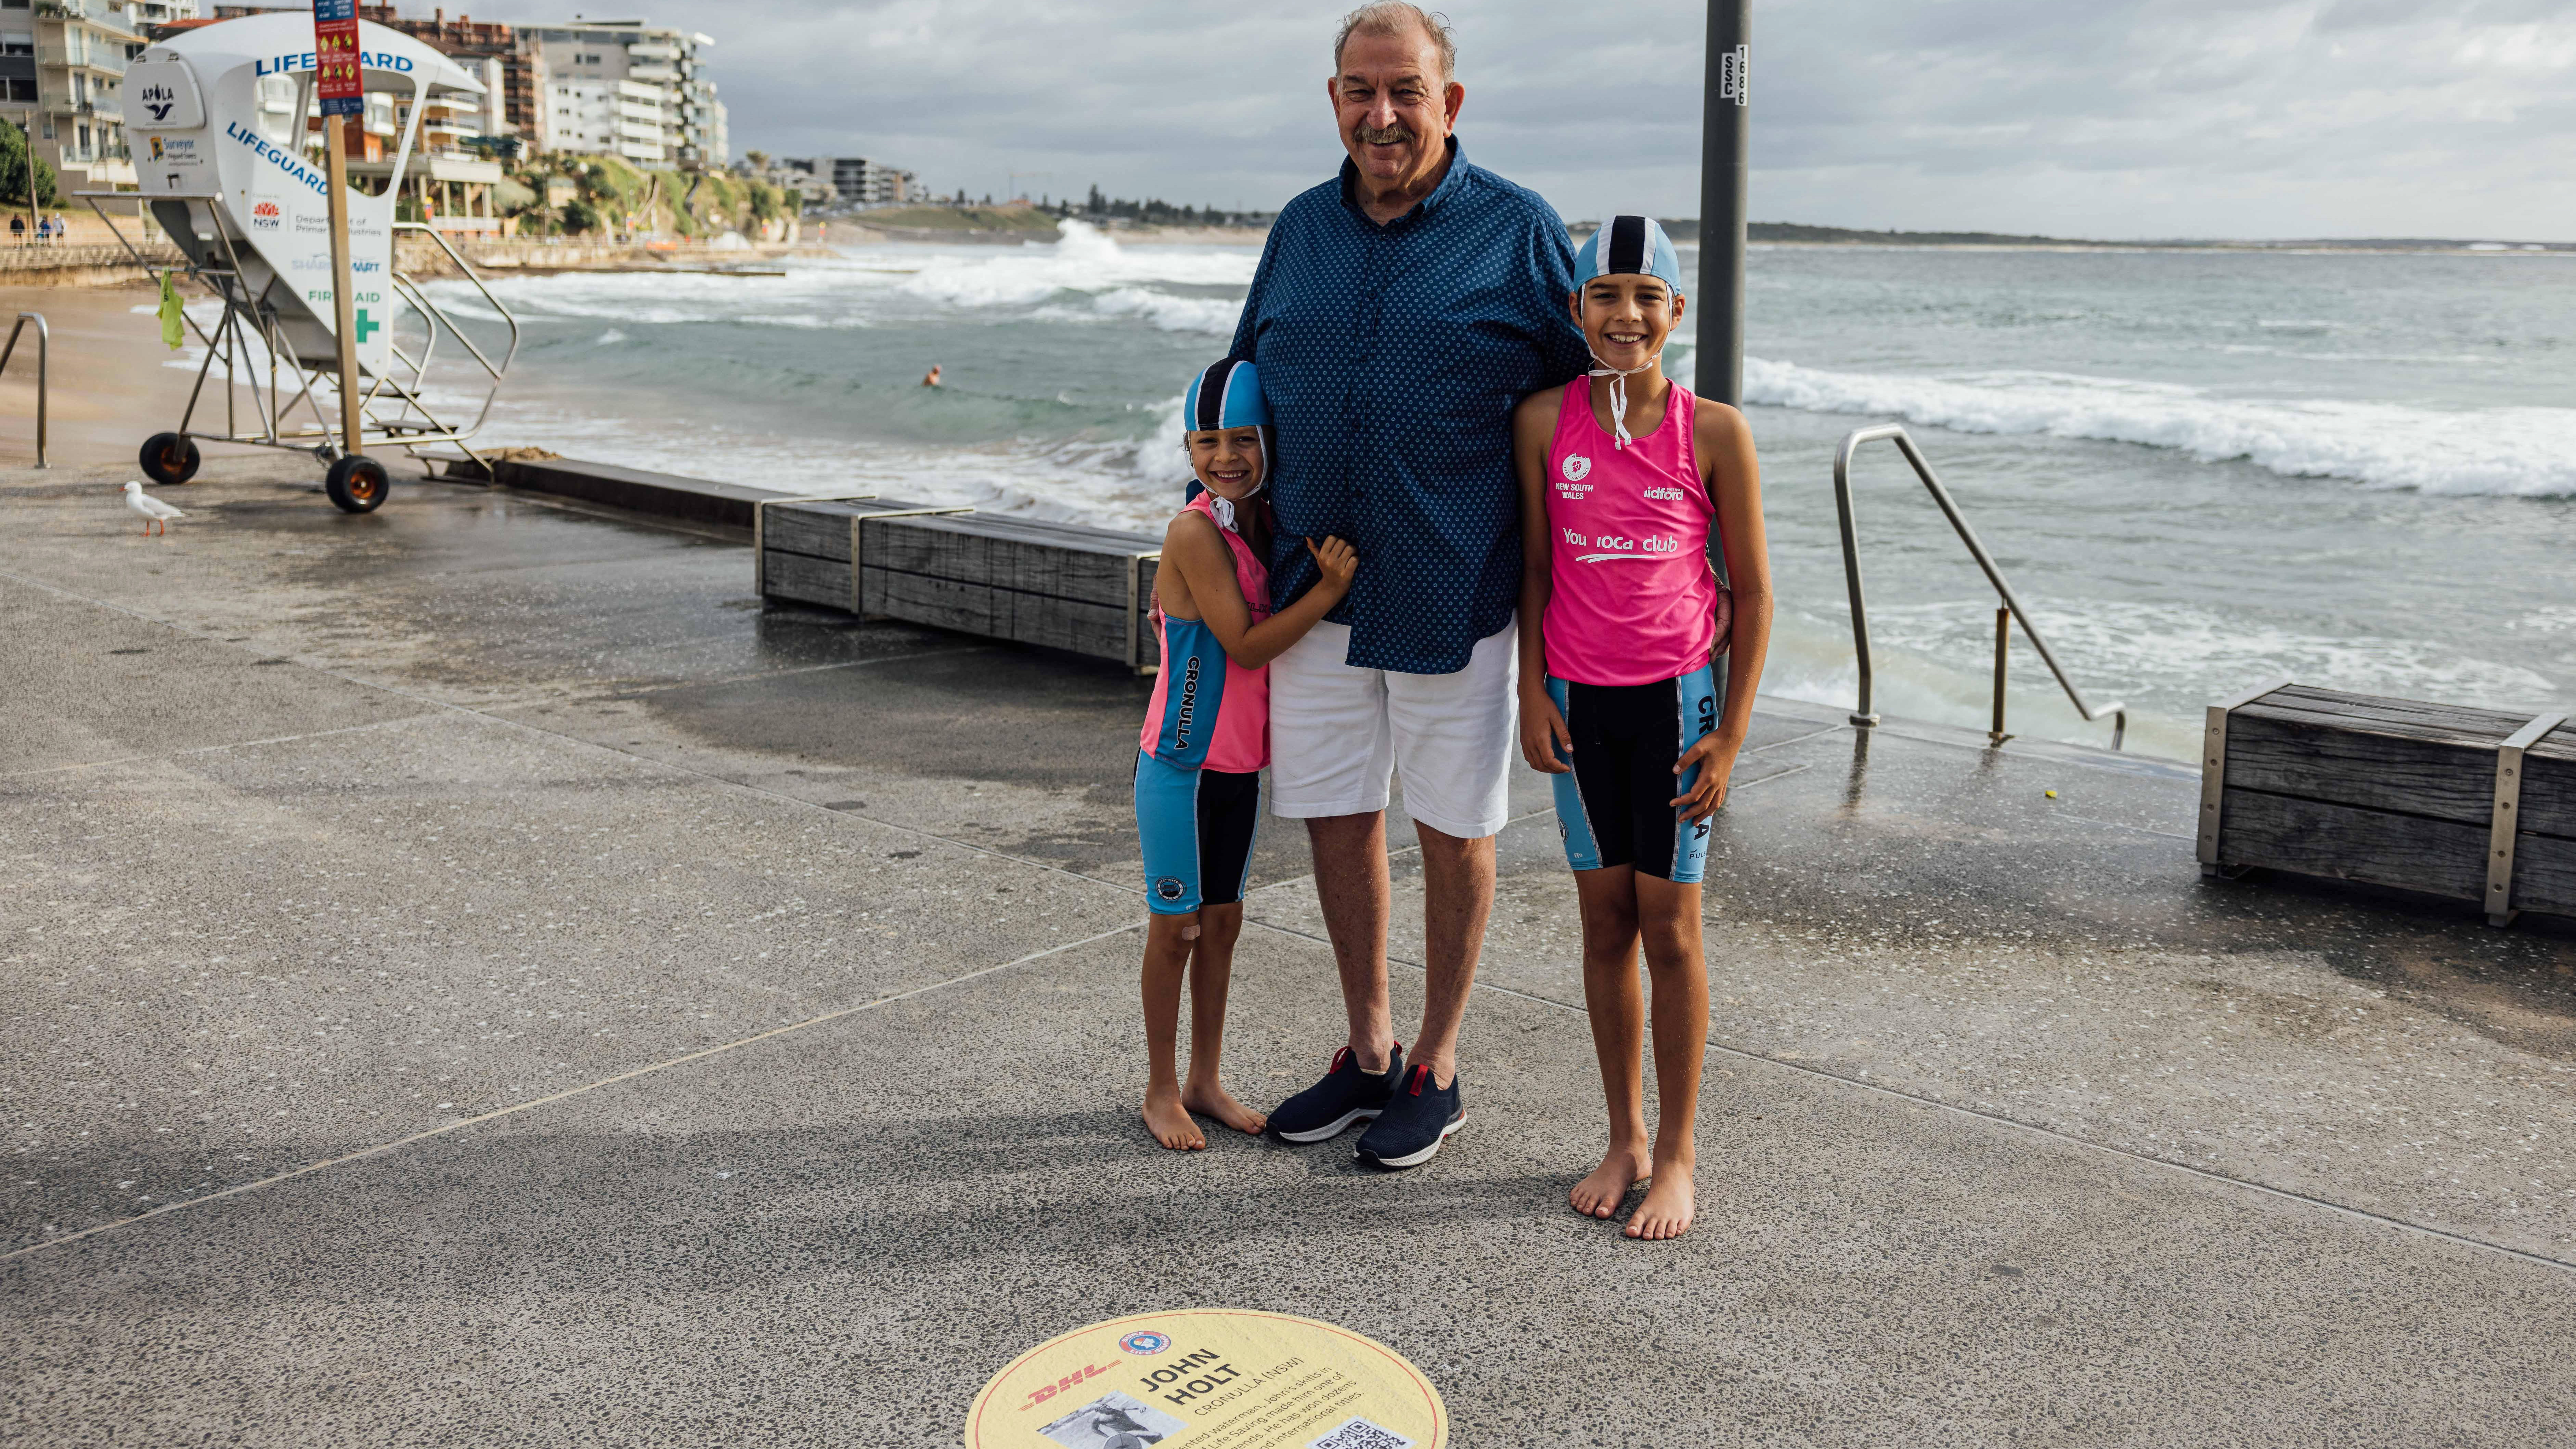 Ironman de sauvetage de surf | L'invention australienne emblématique de l'homme de fer invincible John Holt